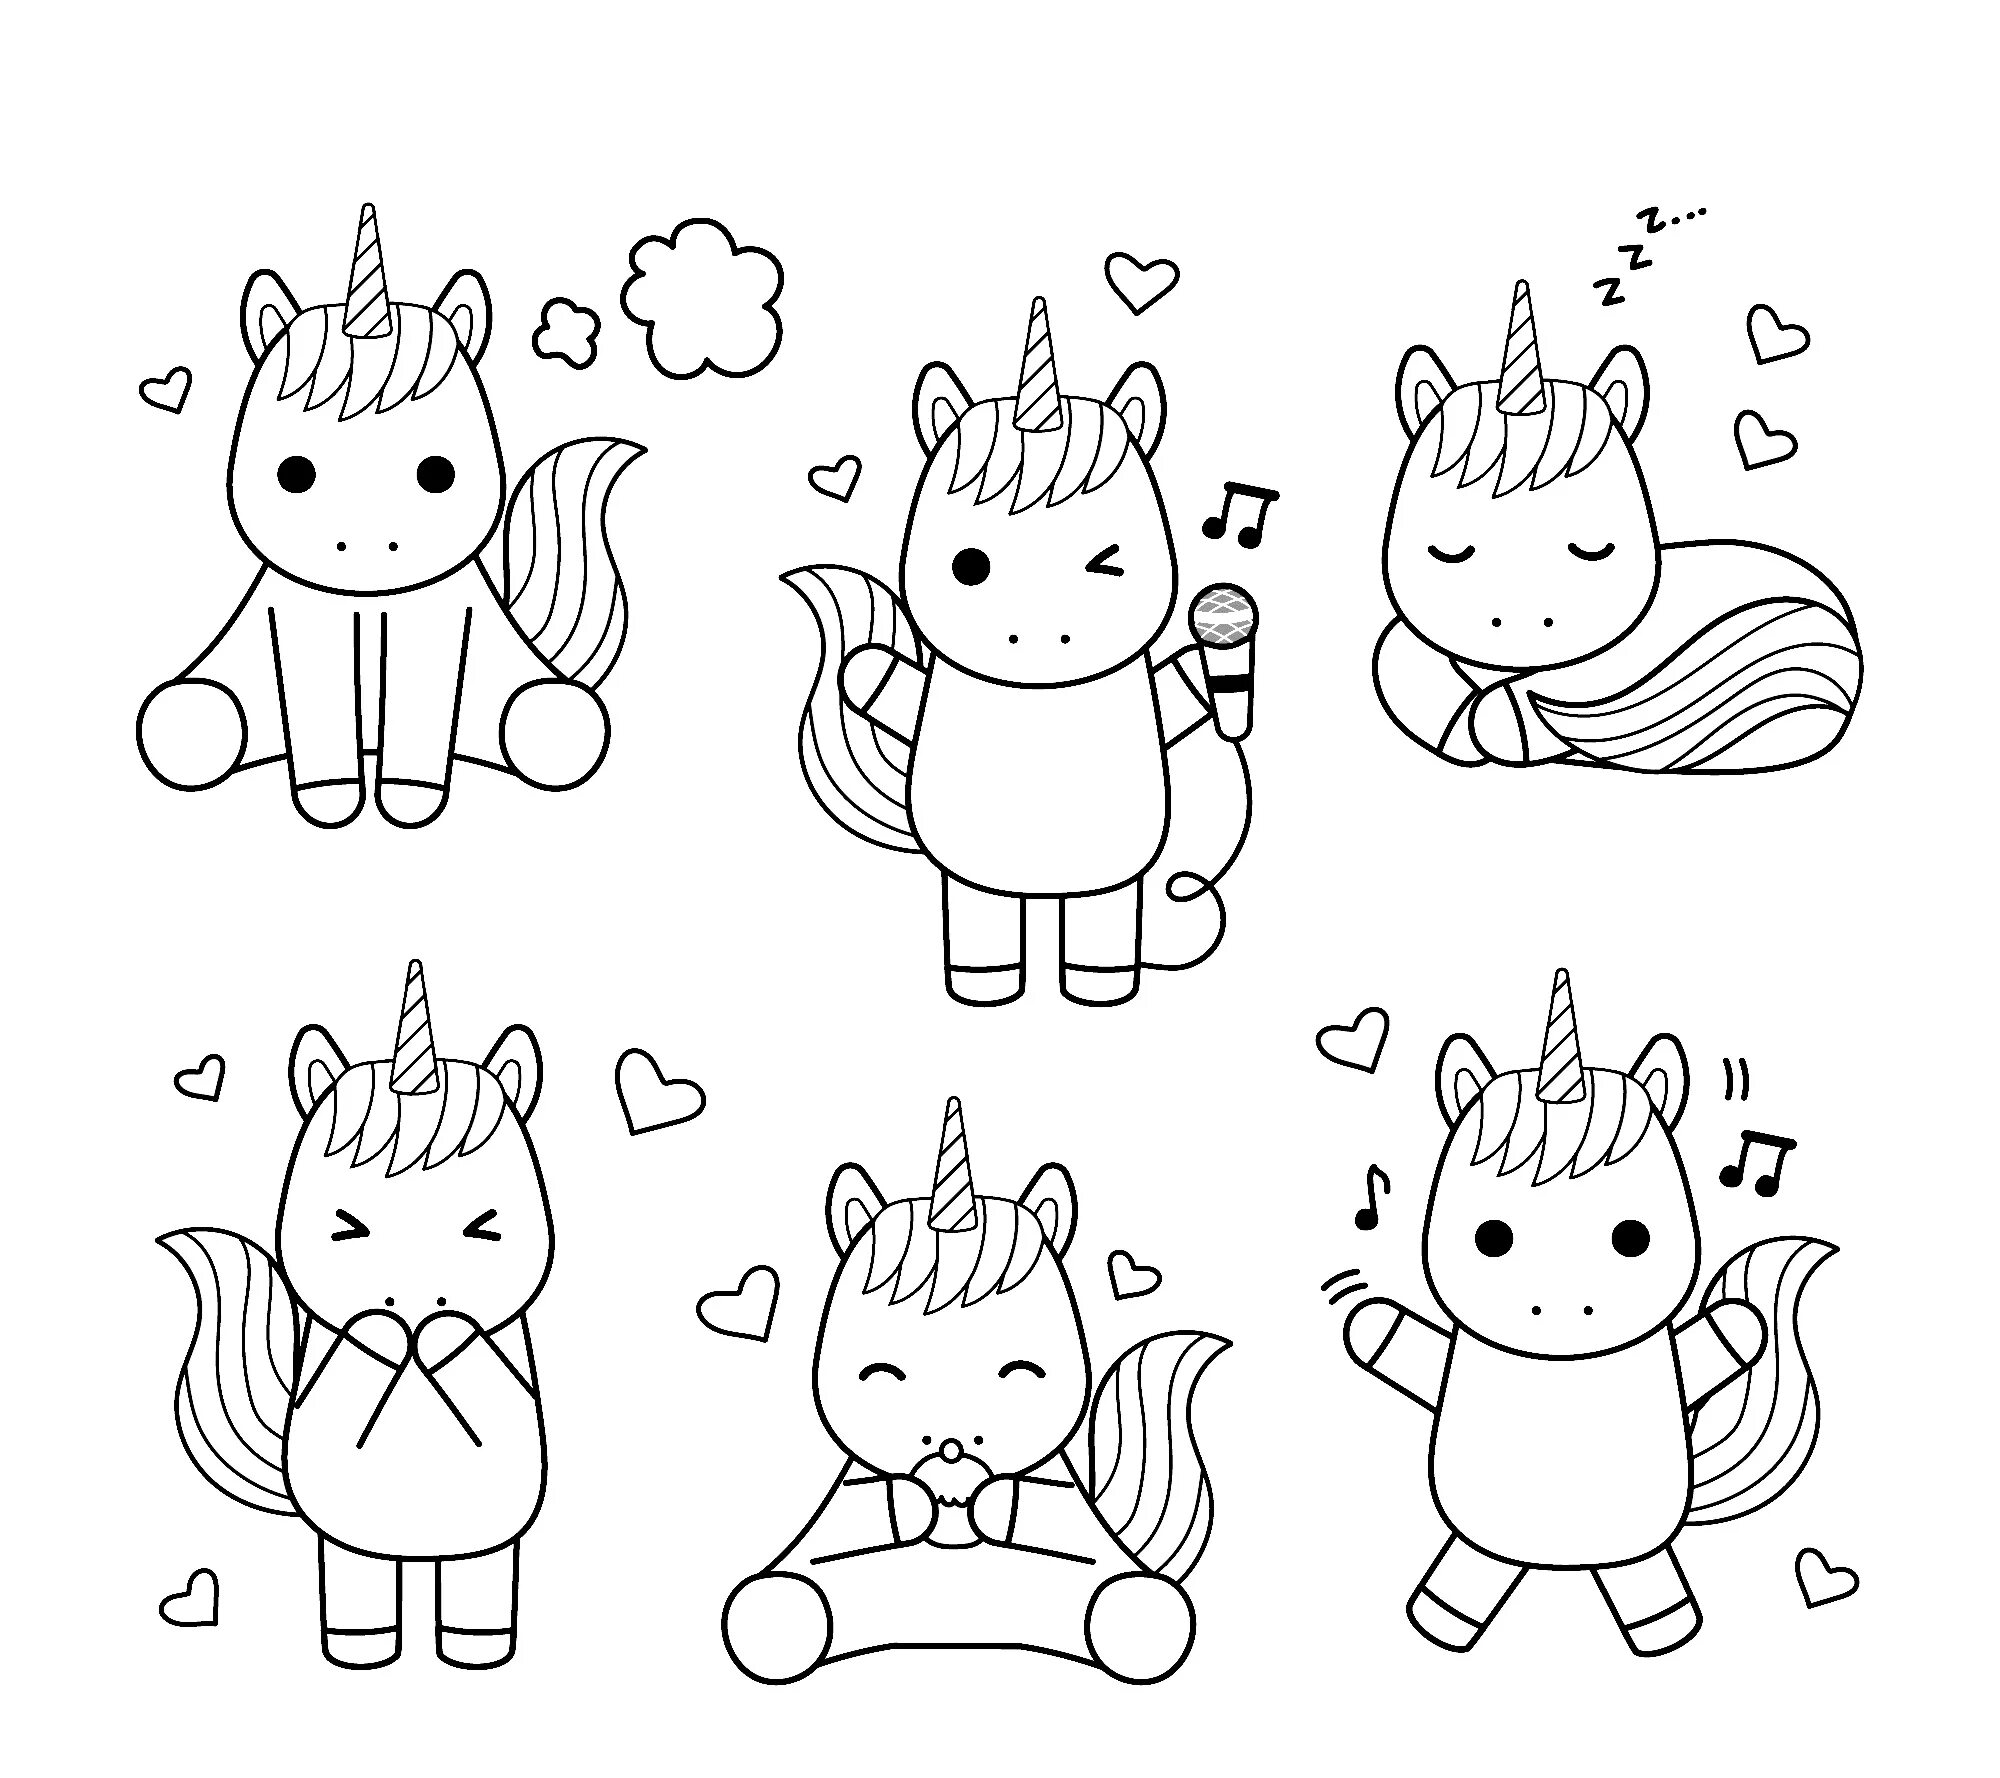 Many unicorns #5